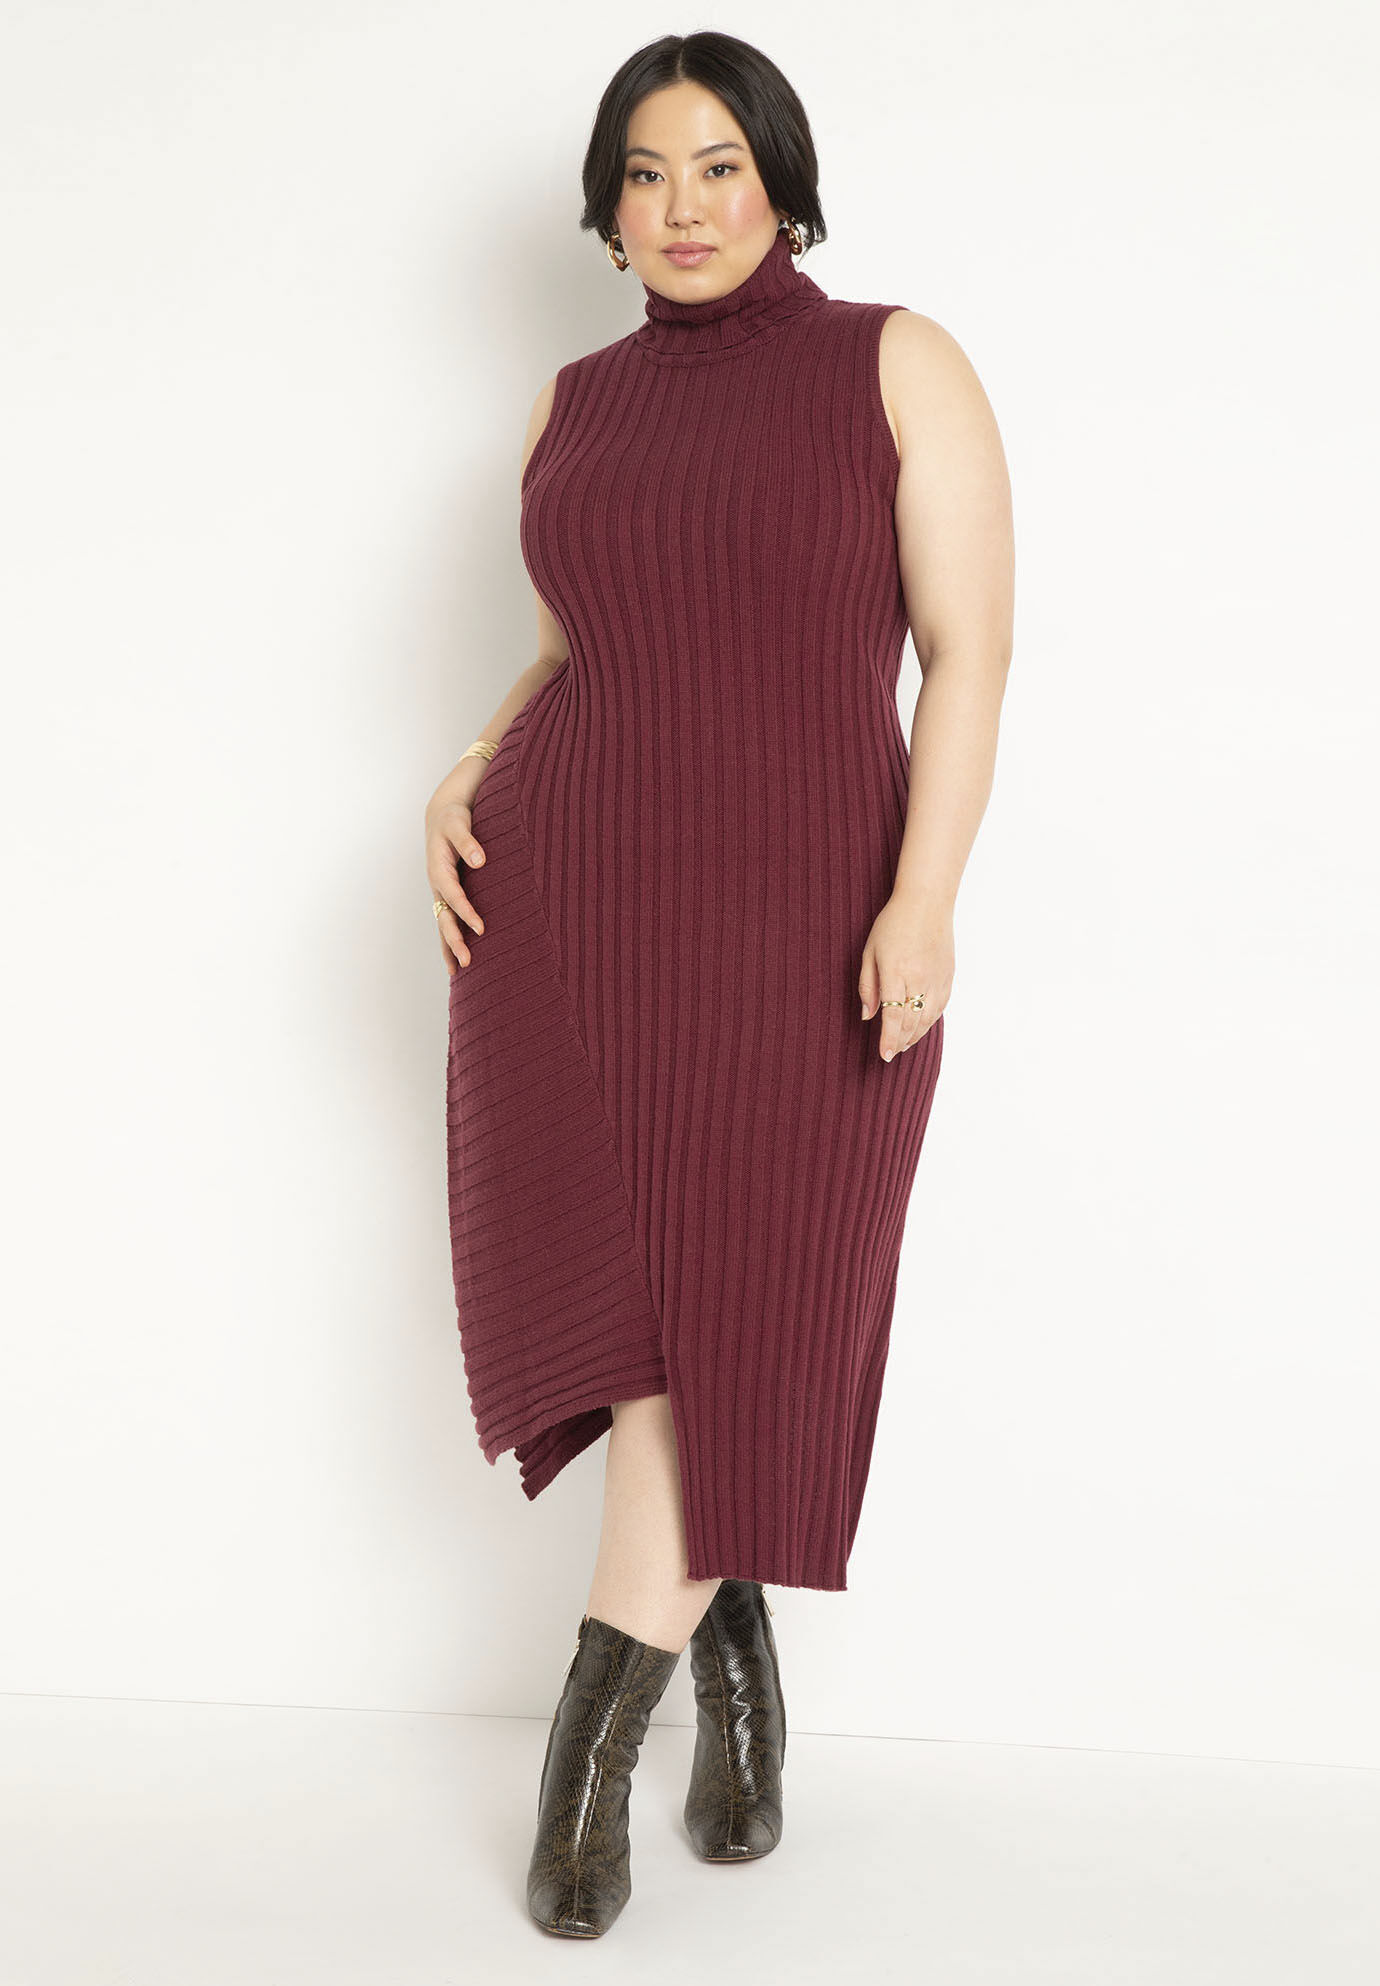 Women Turtleneck Sweater Dress By ( Size 26/28 )